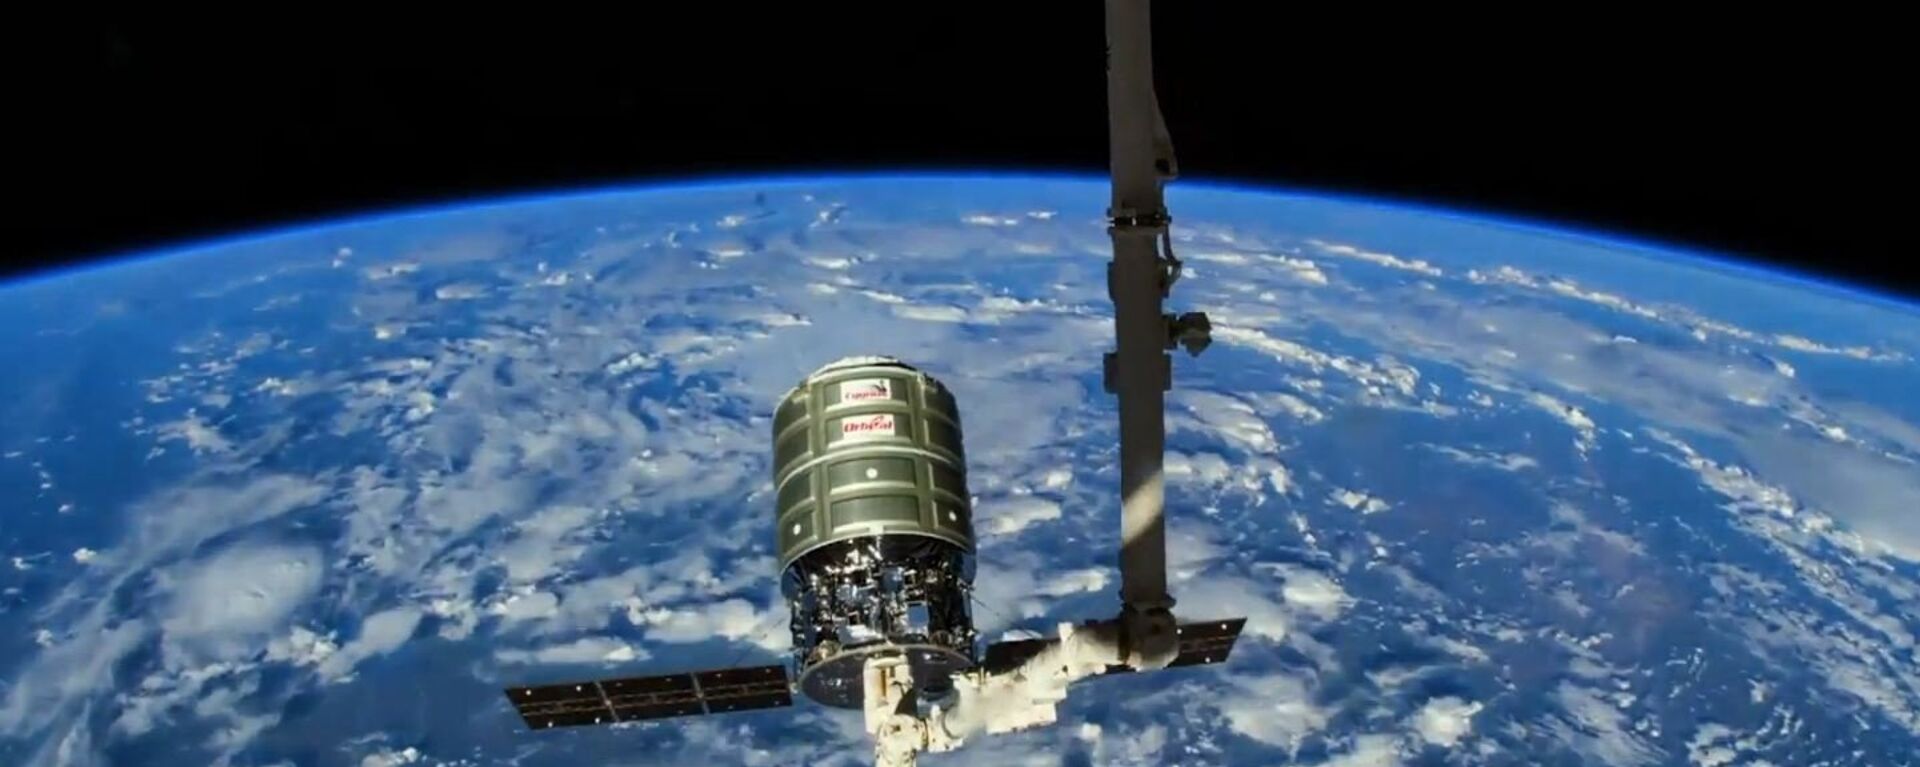 O vídeo oficial do projeto mostra uma nave espacial lança uma sonda para explorar o espaço aéreo - Sputnik Brasil, 1920, 05.01.2022